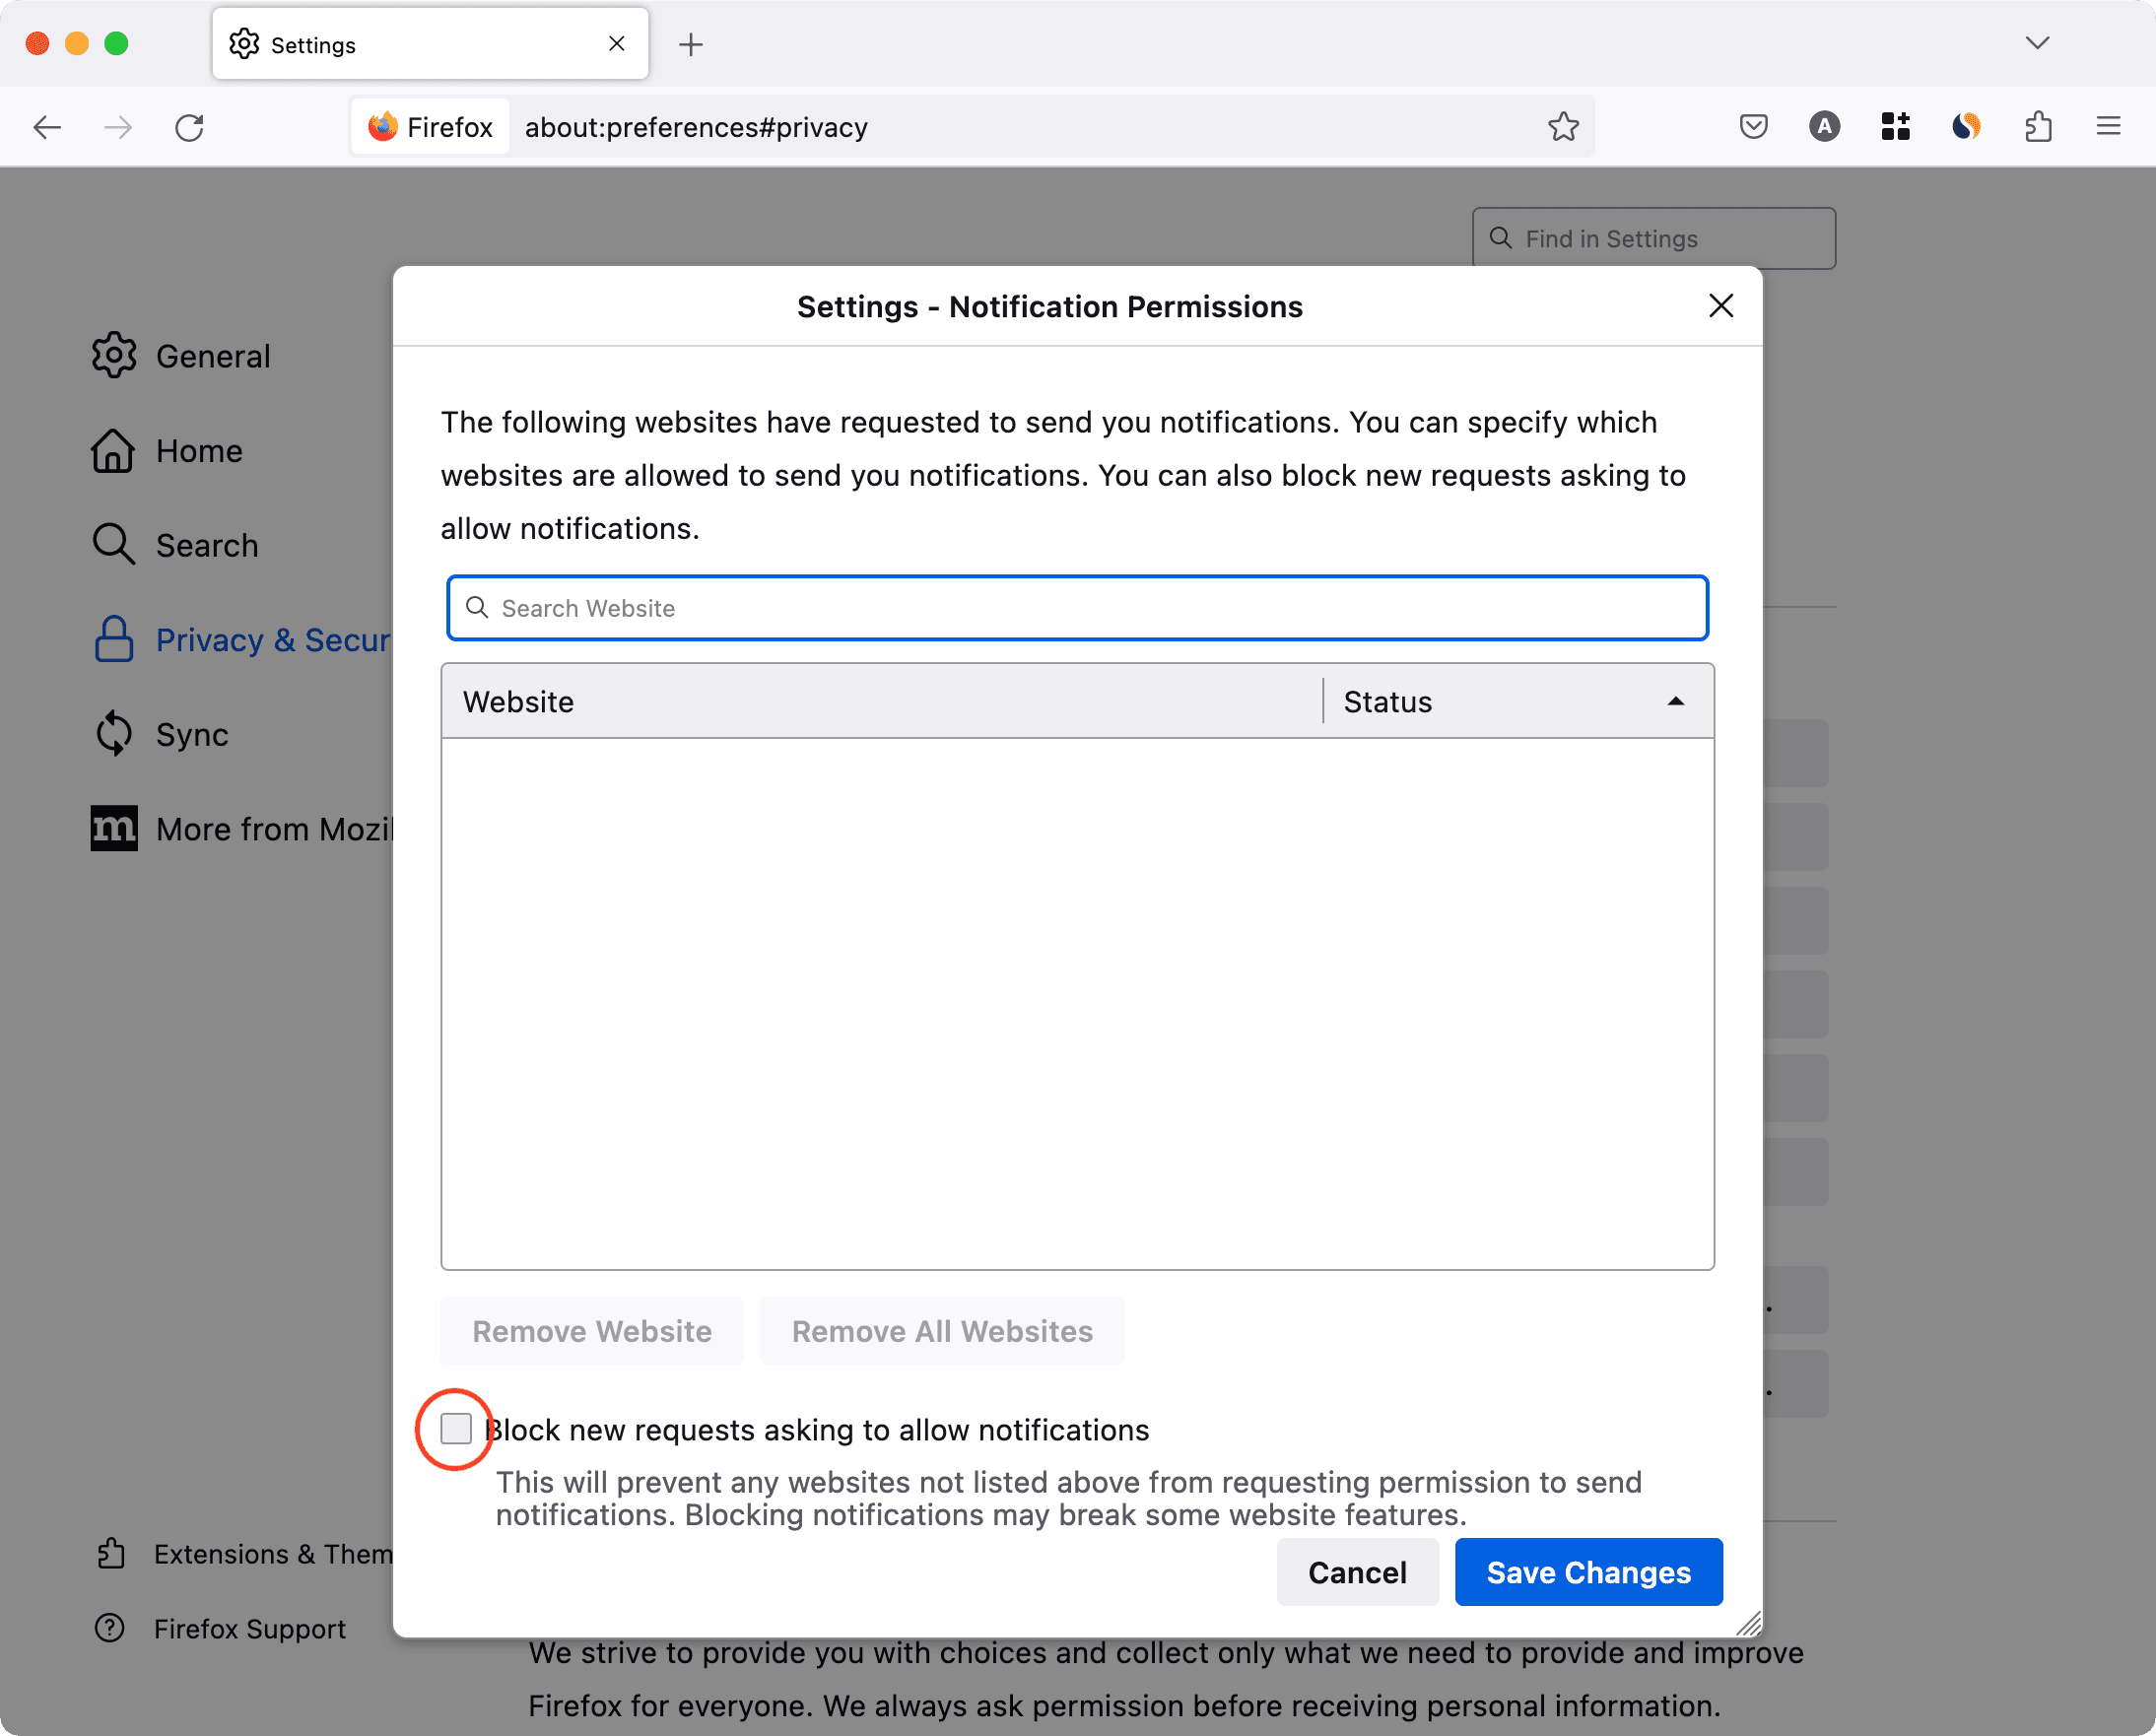 Blokir permintaan baru untuk mengizinkan pemberitahuan di Firefox